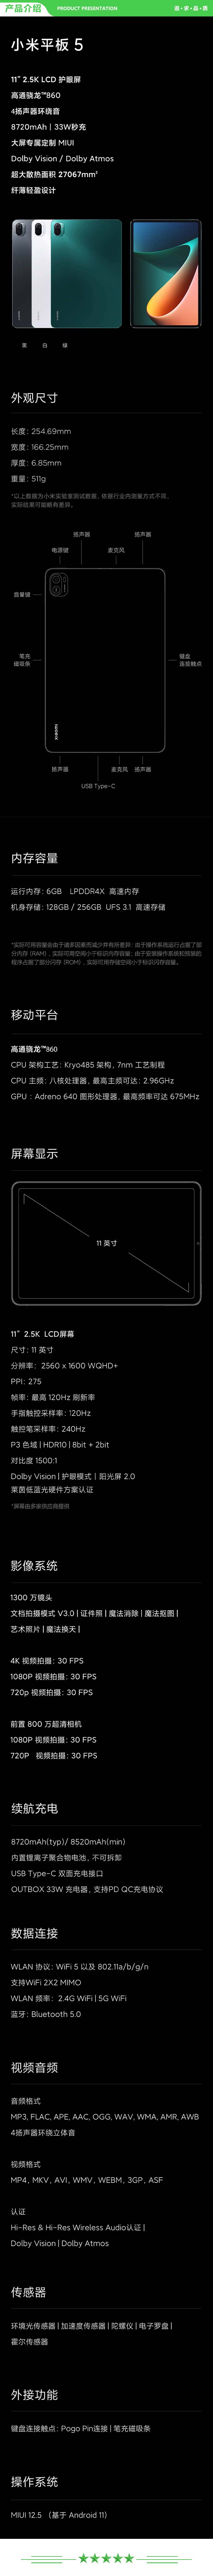 小米 xiaomi 平板5 平板电脑（11英寸2.5K高清 120Hz 骁龙860 6G+256GB 33W快充 杜比影音娱乐办公 白色）.jpg